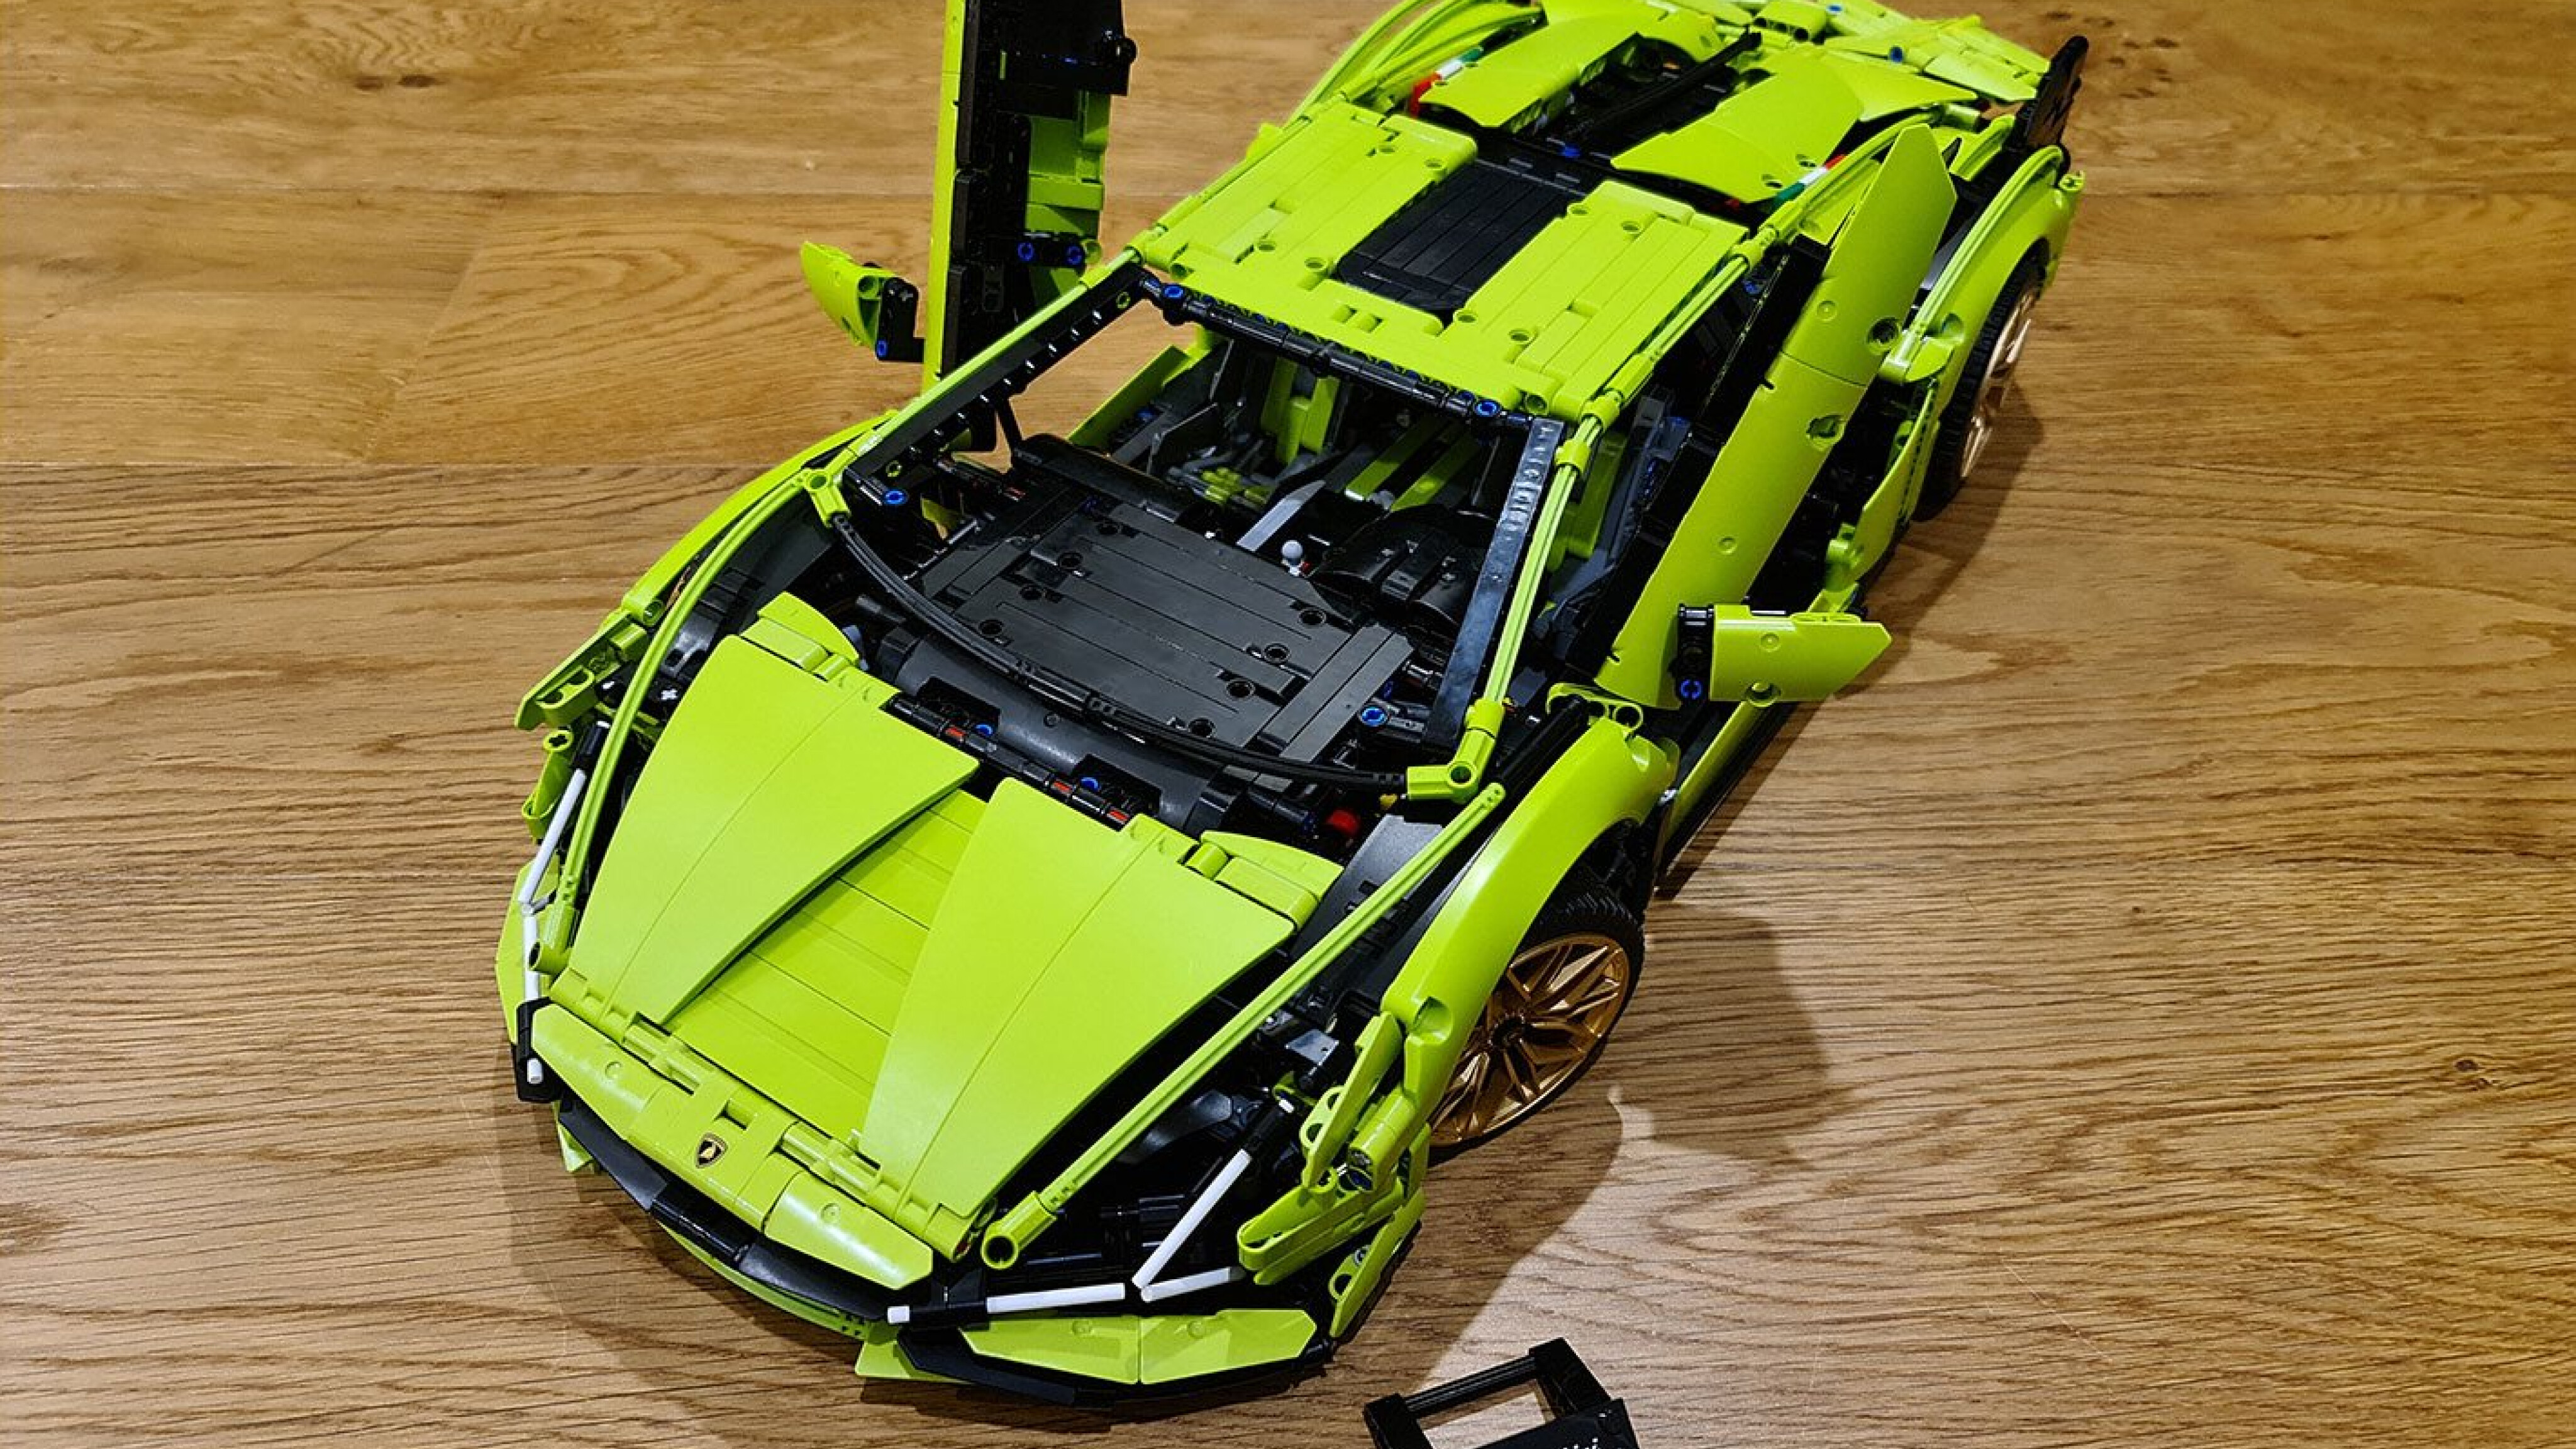 LEGO Technic Lamborghini Sian FKP 37 42115 Review & Lighting